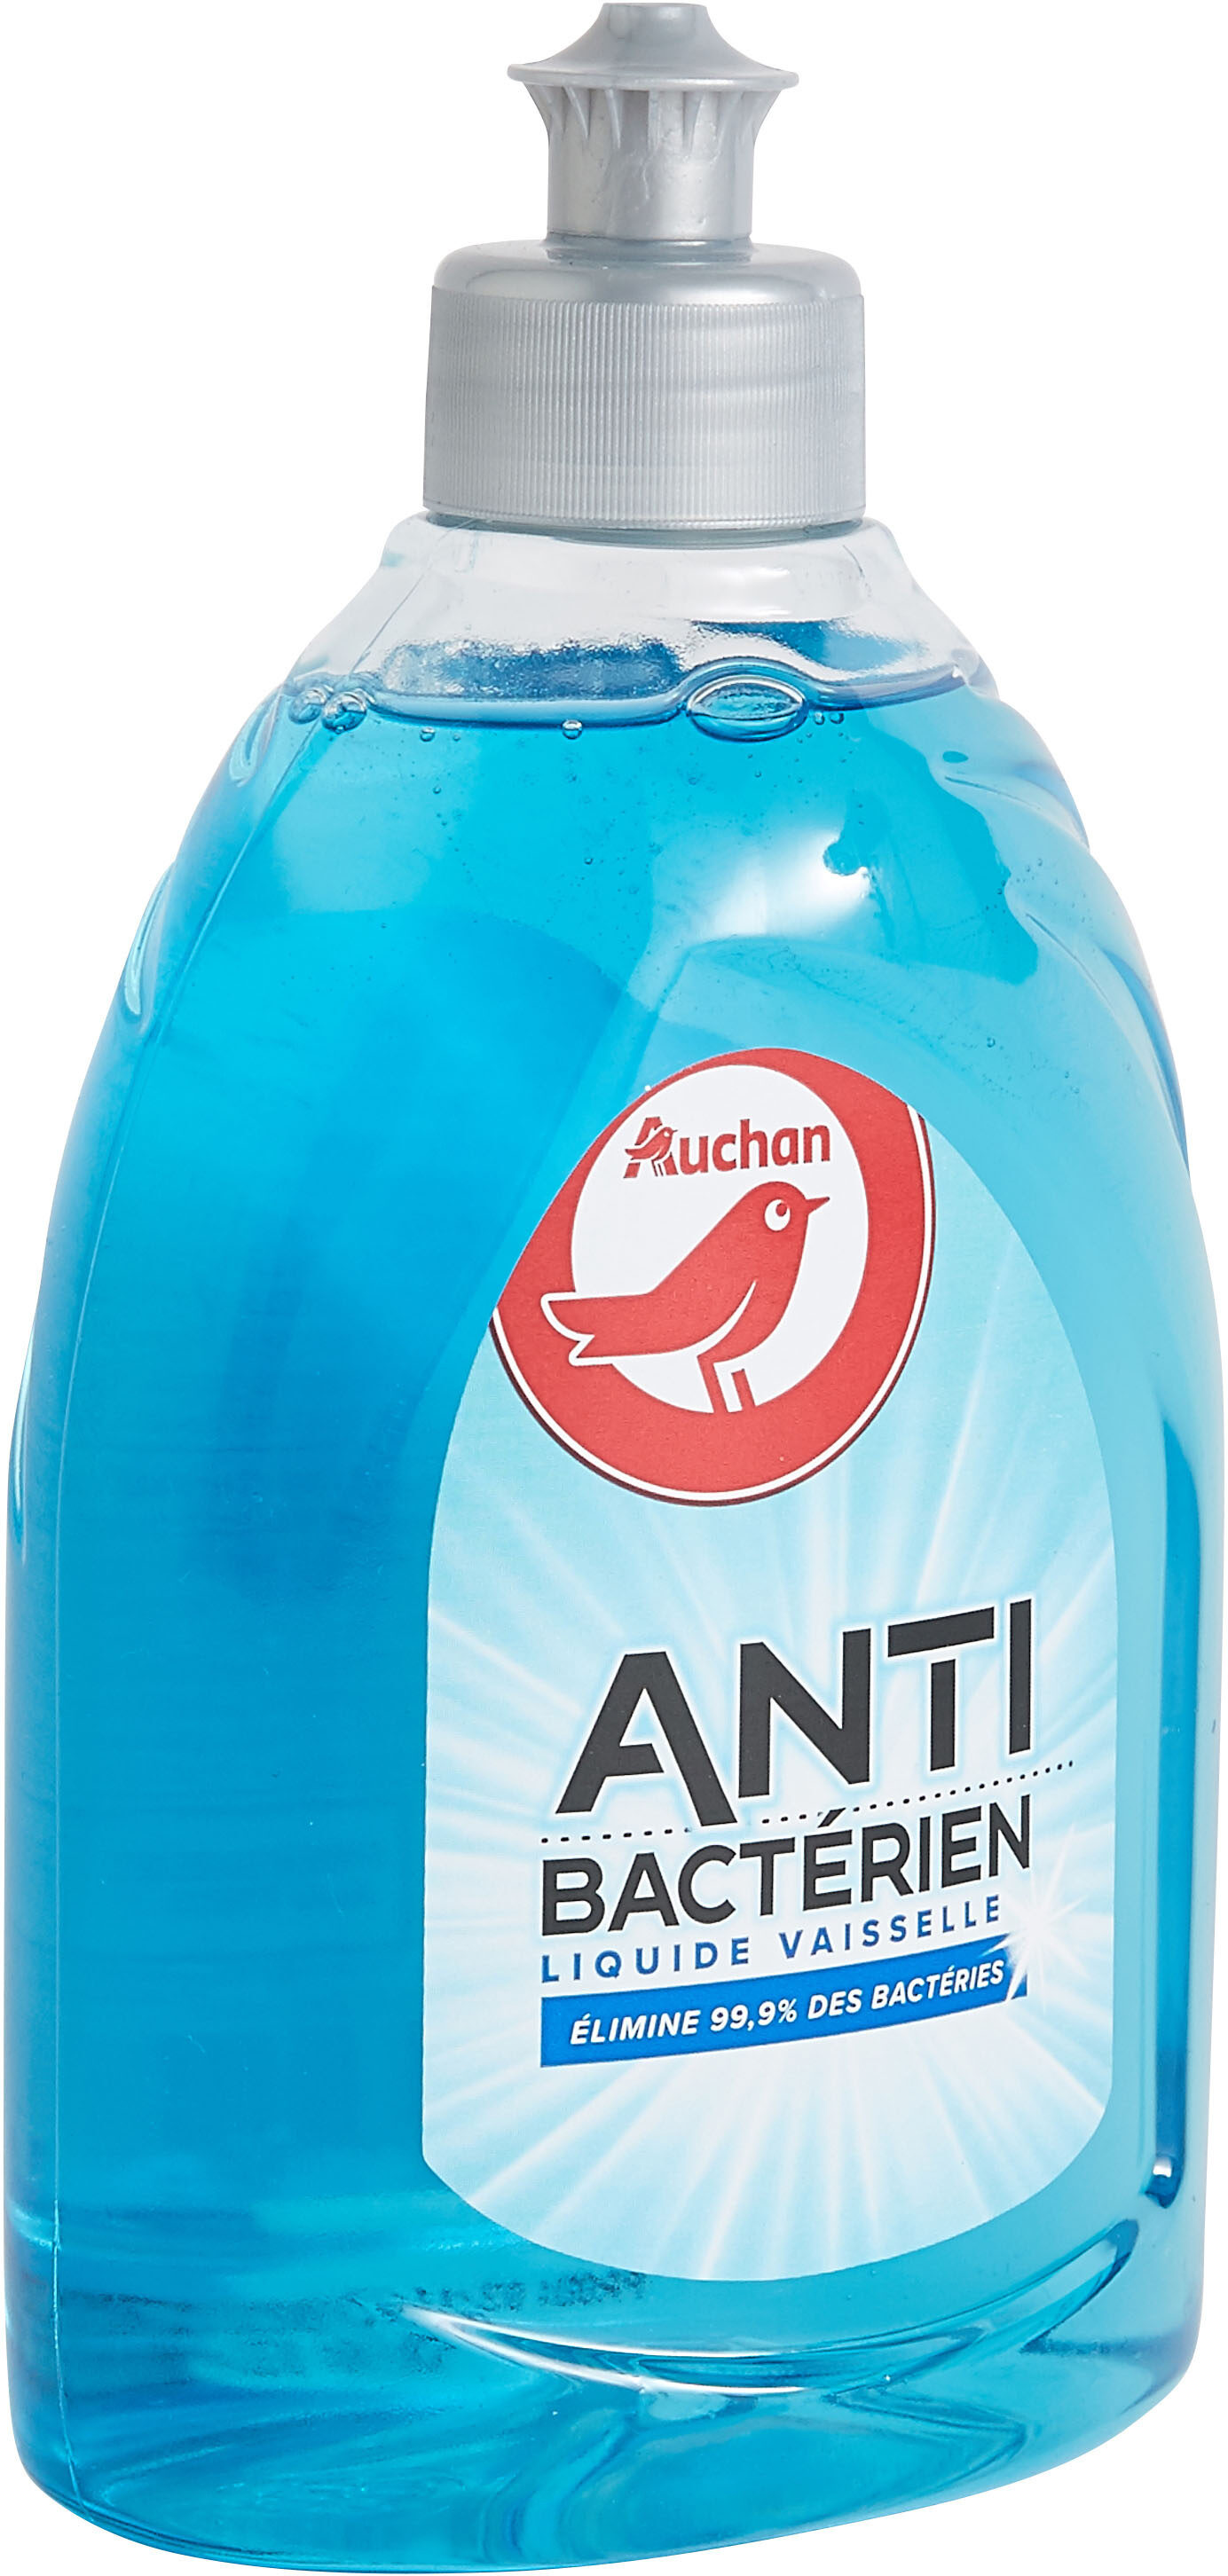 Liquide vaisselle Antibactérien - Product - en